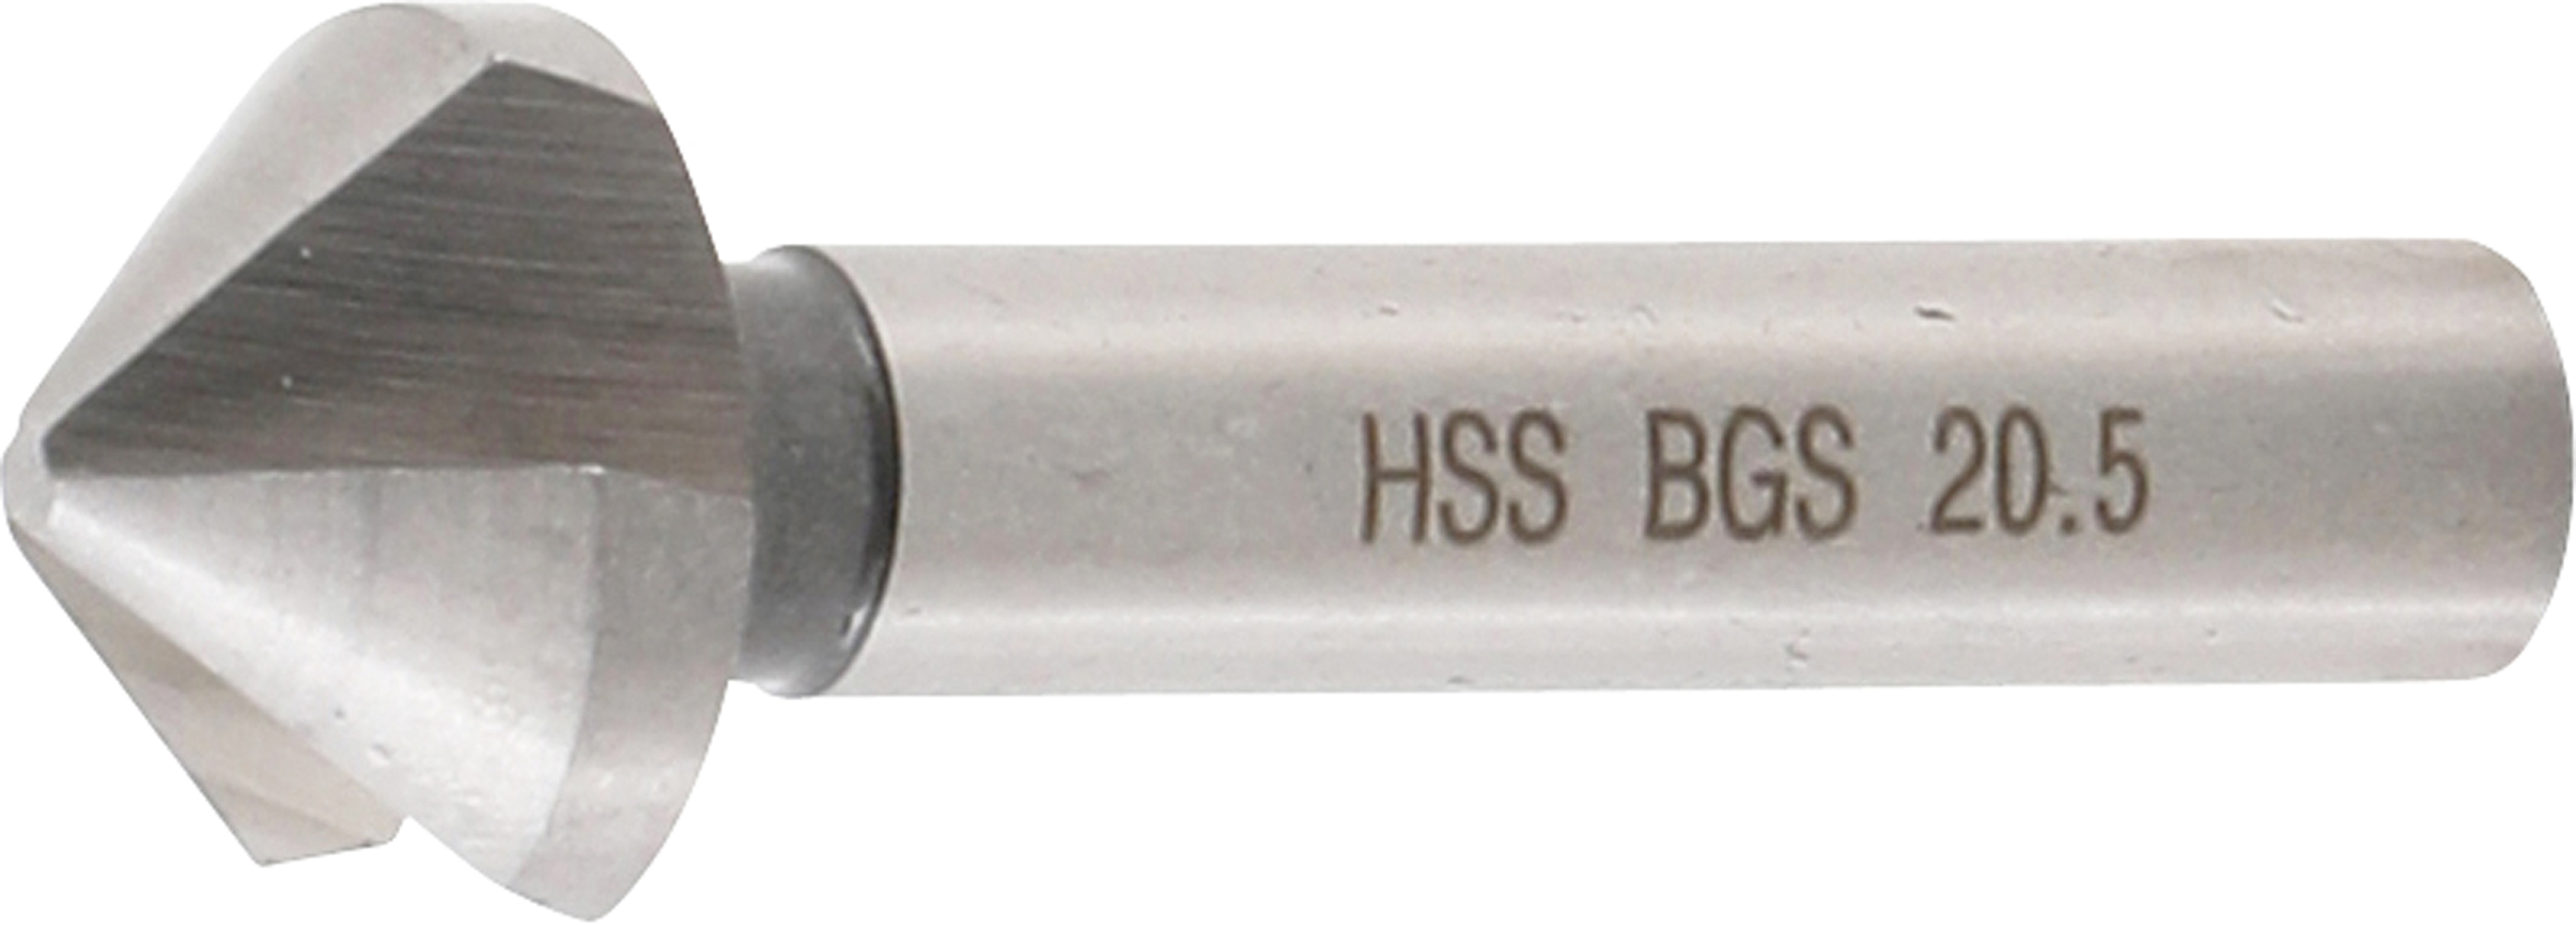 BGS 1997-6 Freza pentru zencuit HSS, DIN 335 Forma C,  Ø 20.5 mm